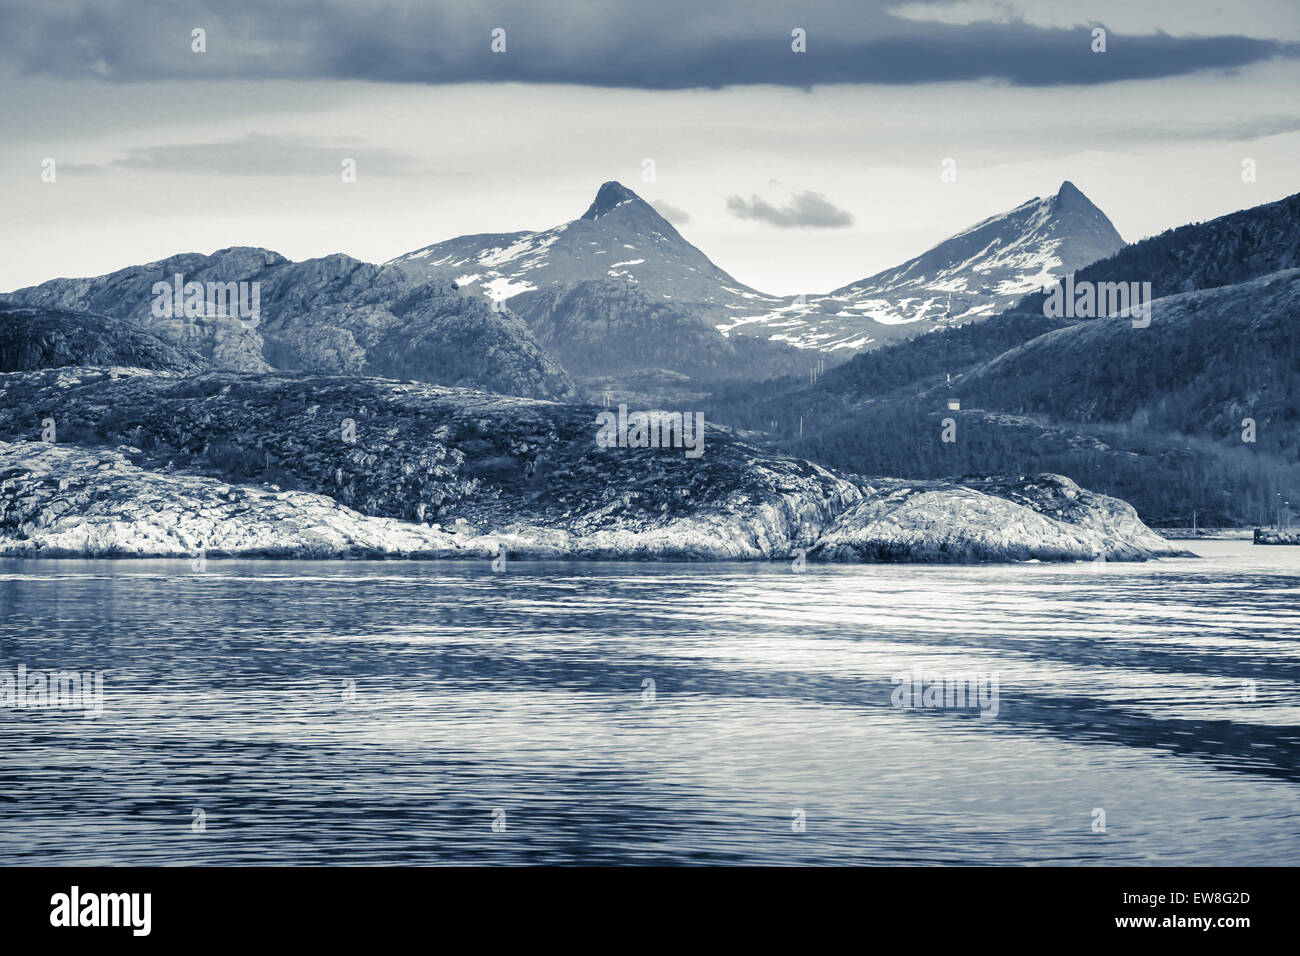 Printemps paysage norvégien avec vue sur la mer et les montagnes de la côte avec la neige. Photo monochrome dans les tons bleus, filtre style vintage Banque D'Images